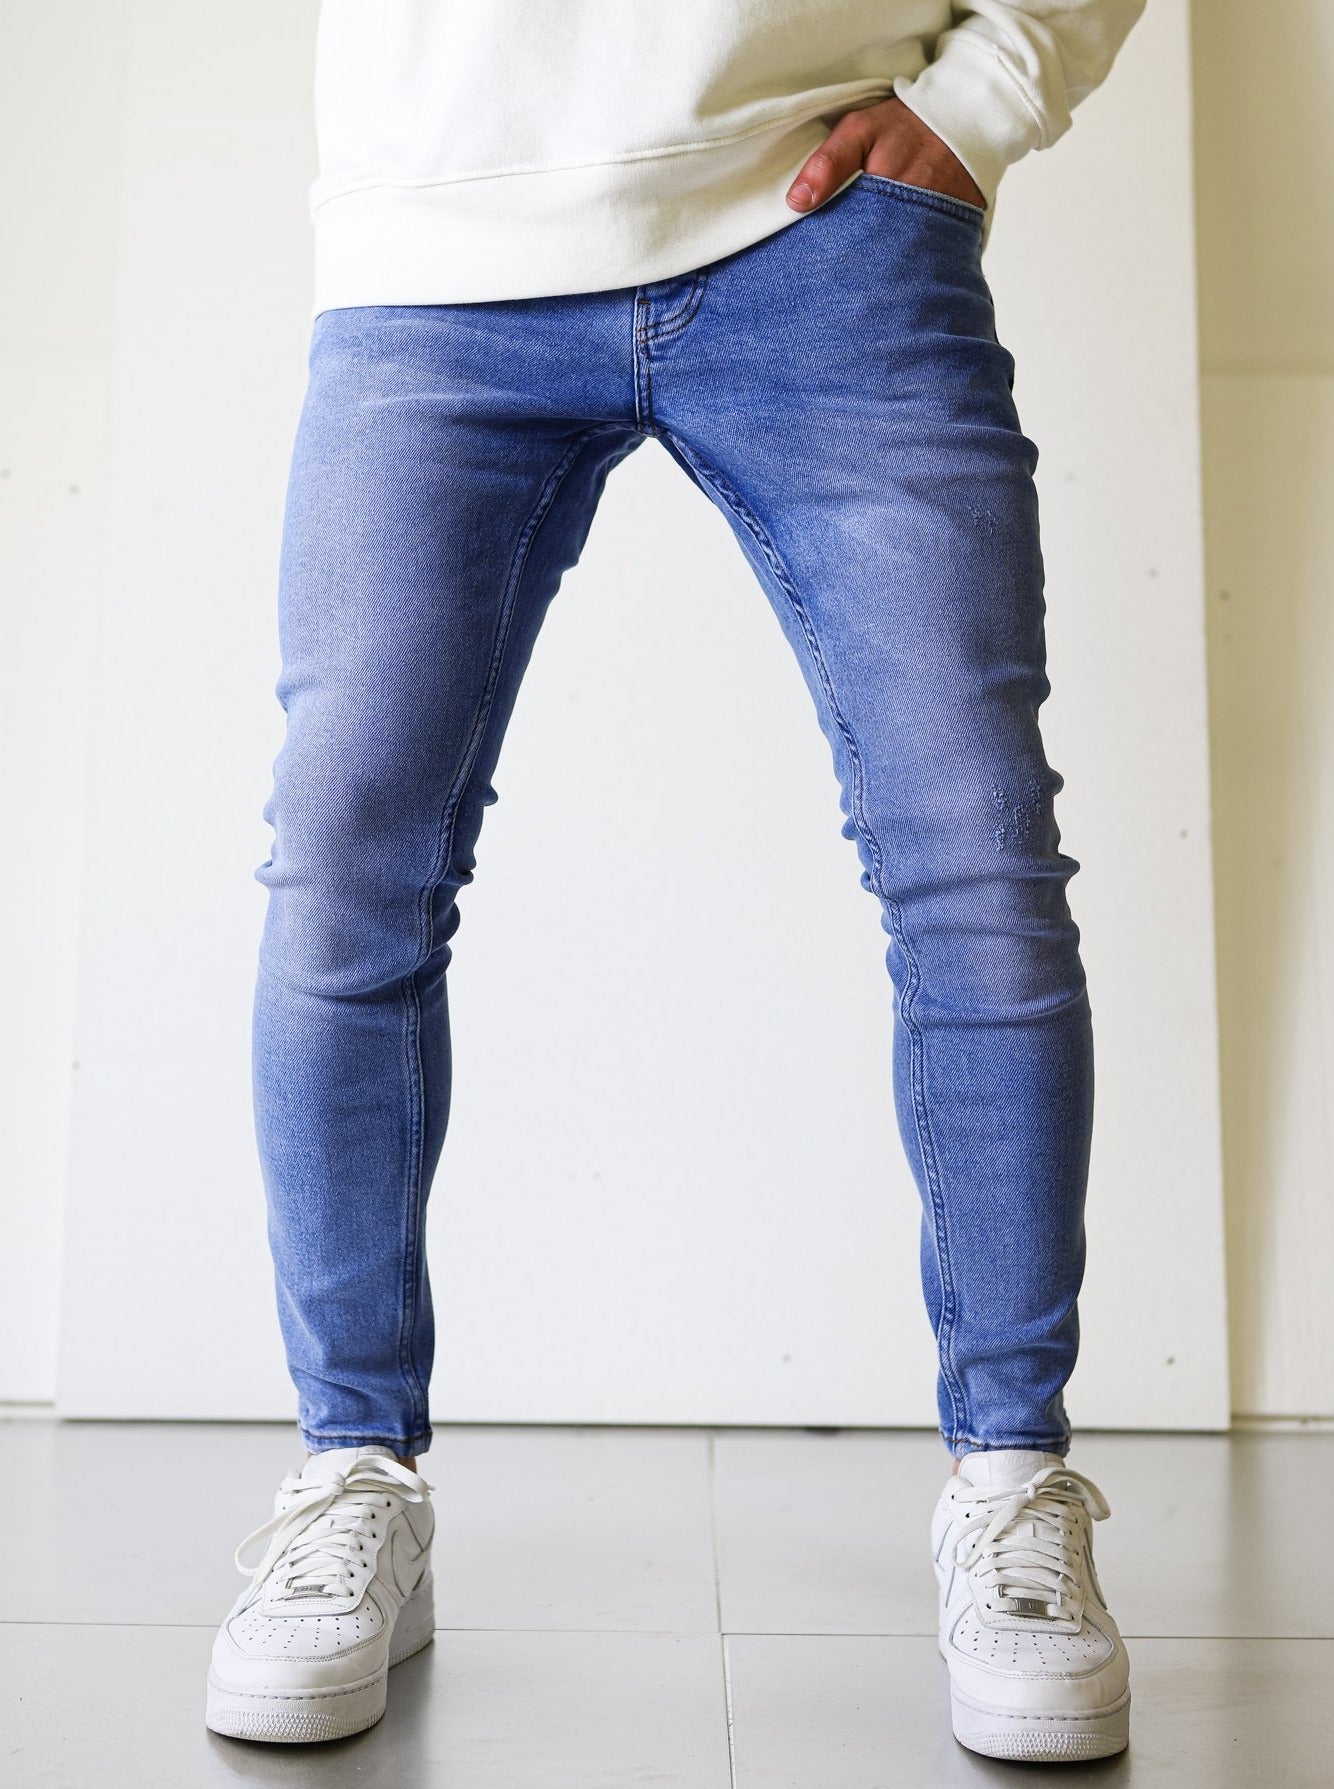 Basic Light Blue Jeans - UNEFFECTED STUDIOS® - JEANS - UNEFFECTED